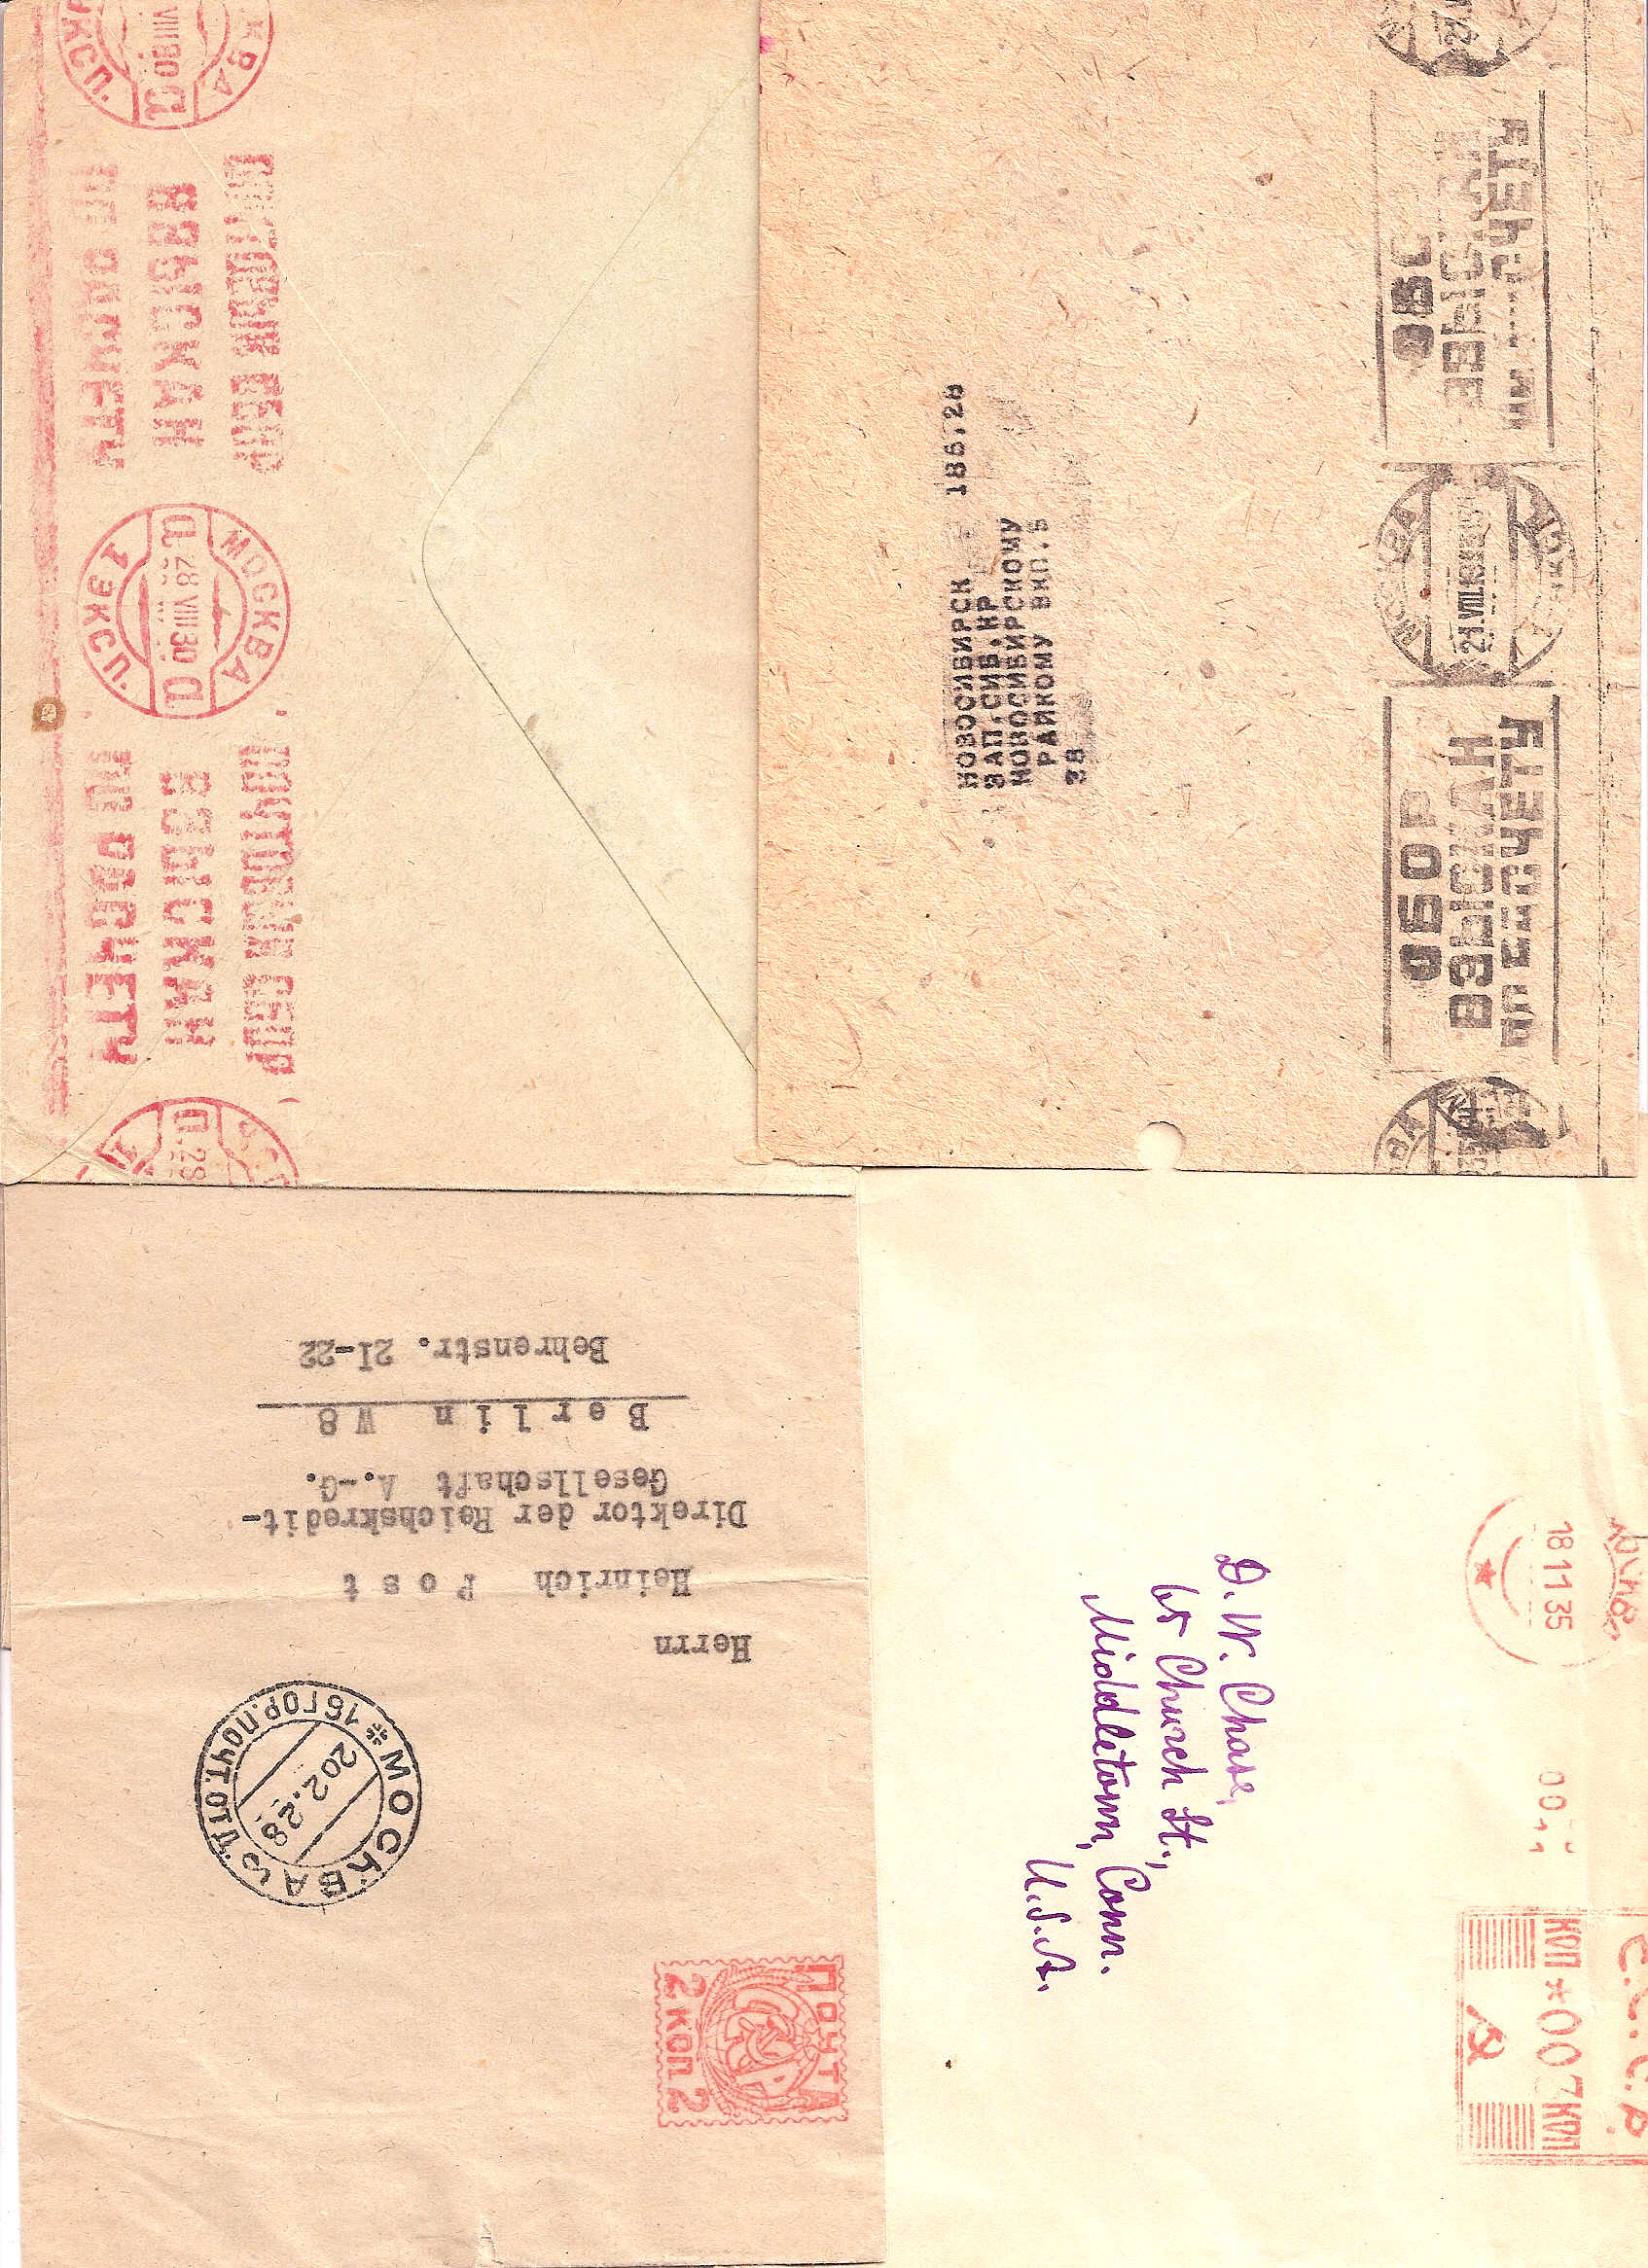 Russia Postal History - Soviet Union SOVIET UNOUN (U.S.S.R.) Scott 1928 